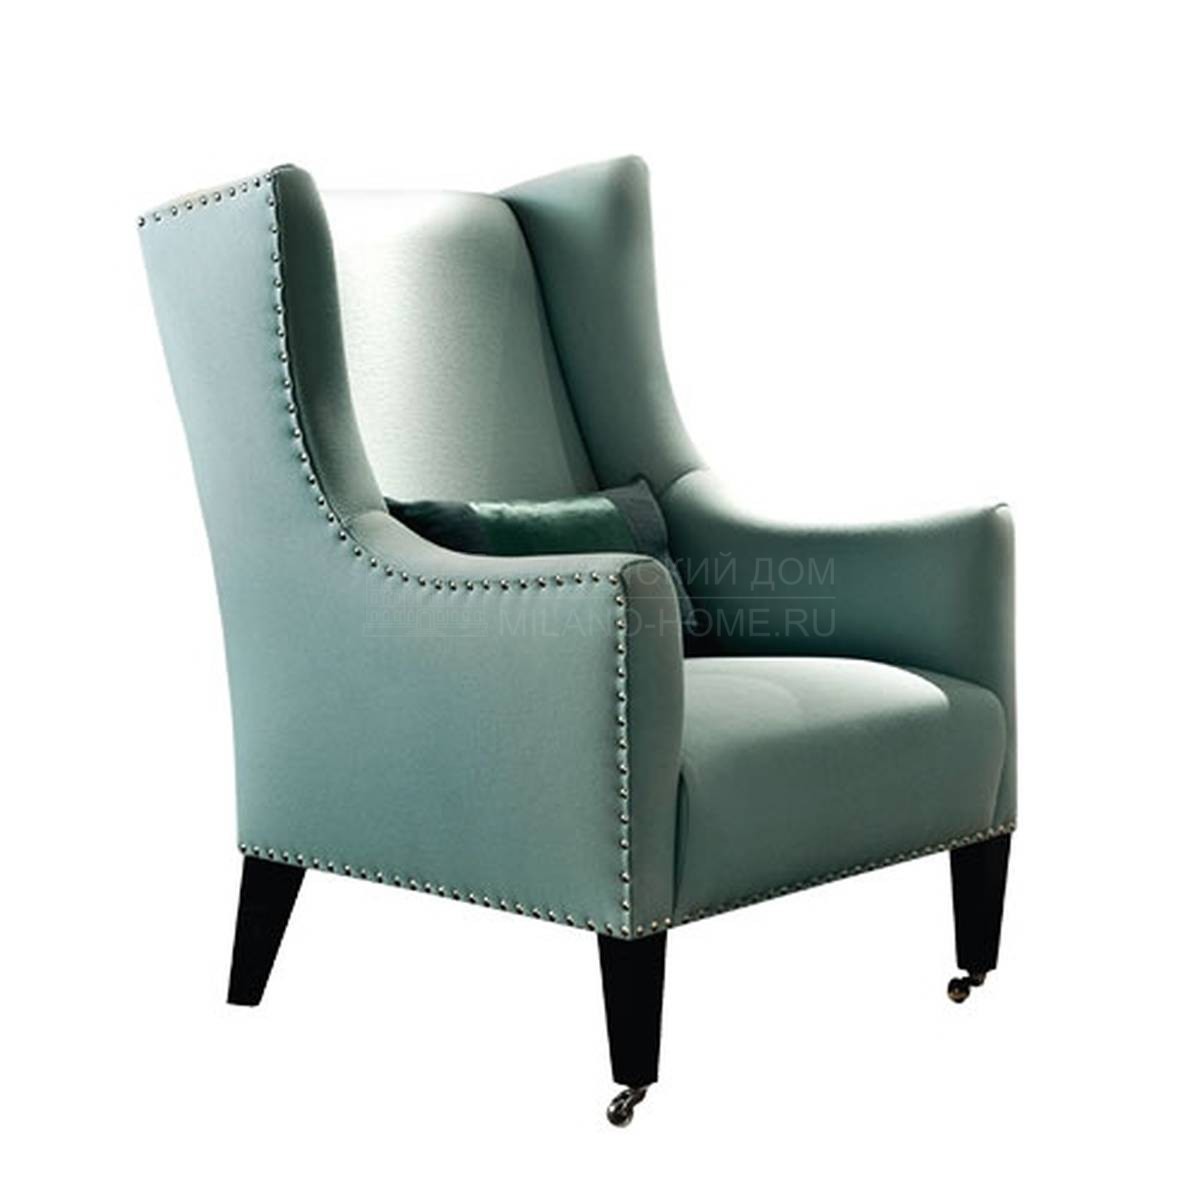 Каминное кресло Amarillis/ armchair из Италия фабрики SOFTHOUSE